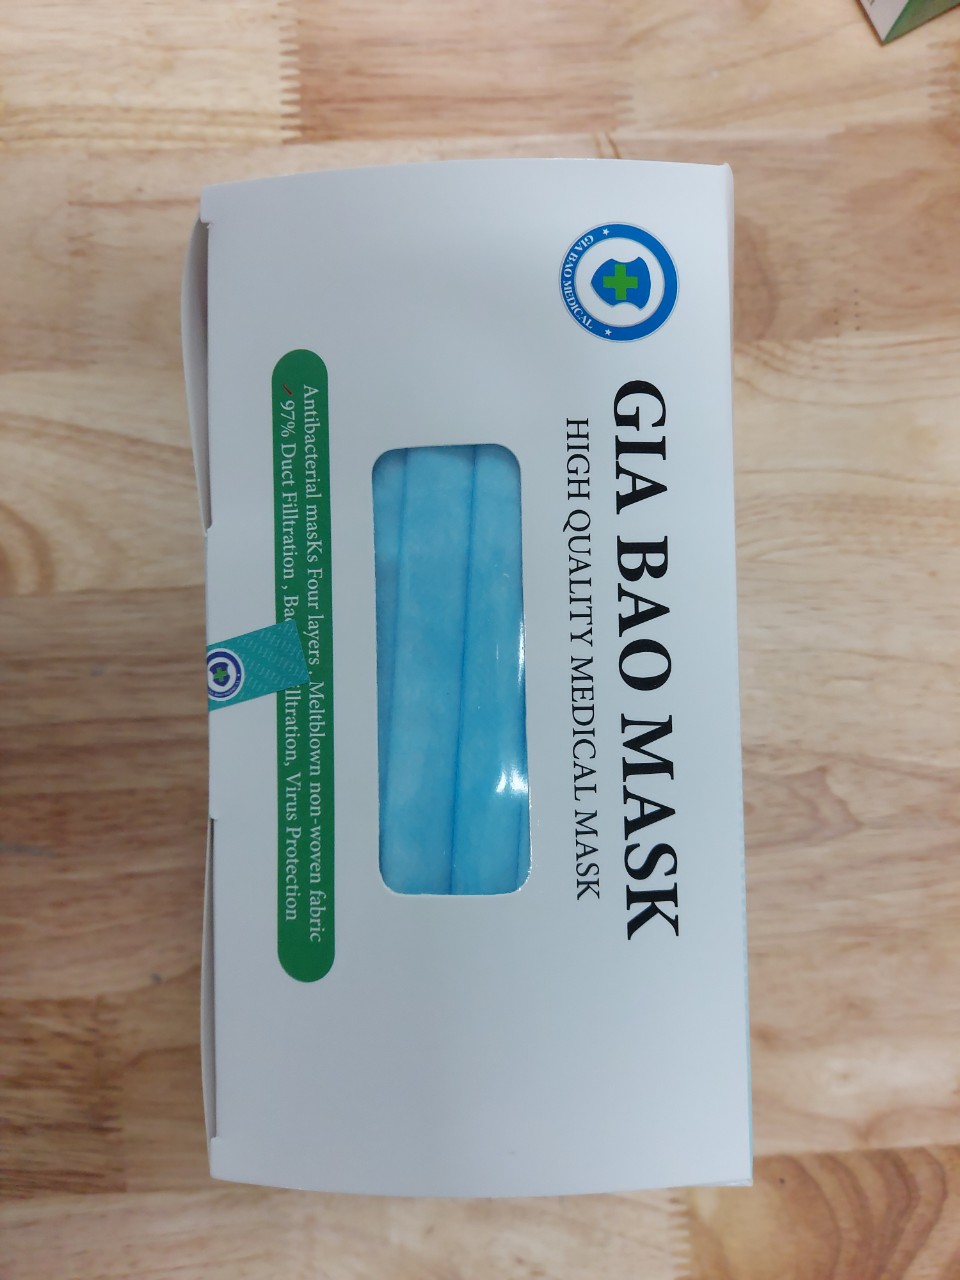 Combo 2 hộp khẩu trang y tế 4 lớp Gia Bảo Facemask (mỗi hộp 50 cái) tiết kiệm. Sản phẩm kháng khuẩn bảo vệ đường hô hấp